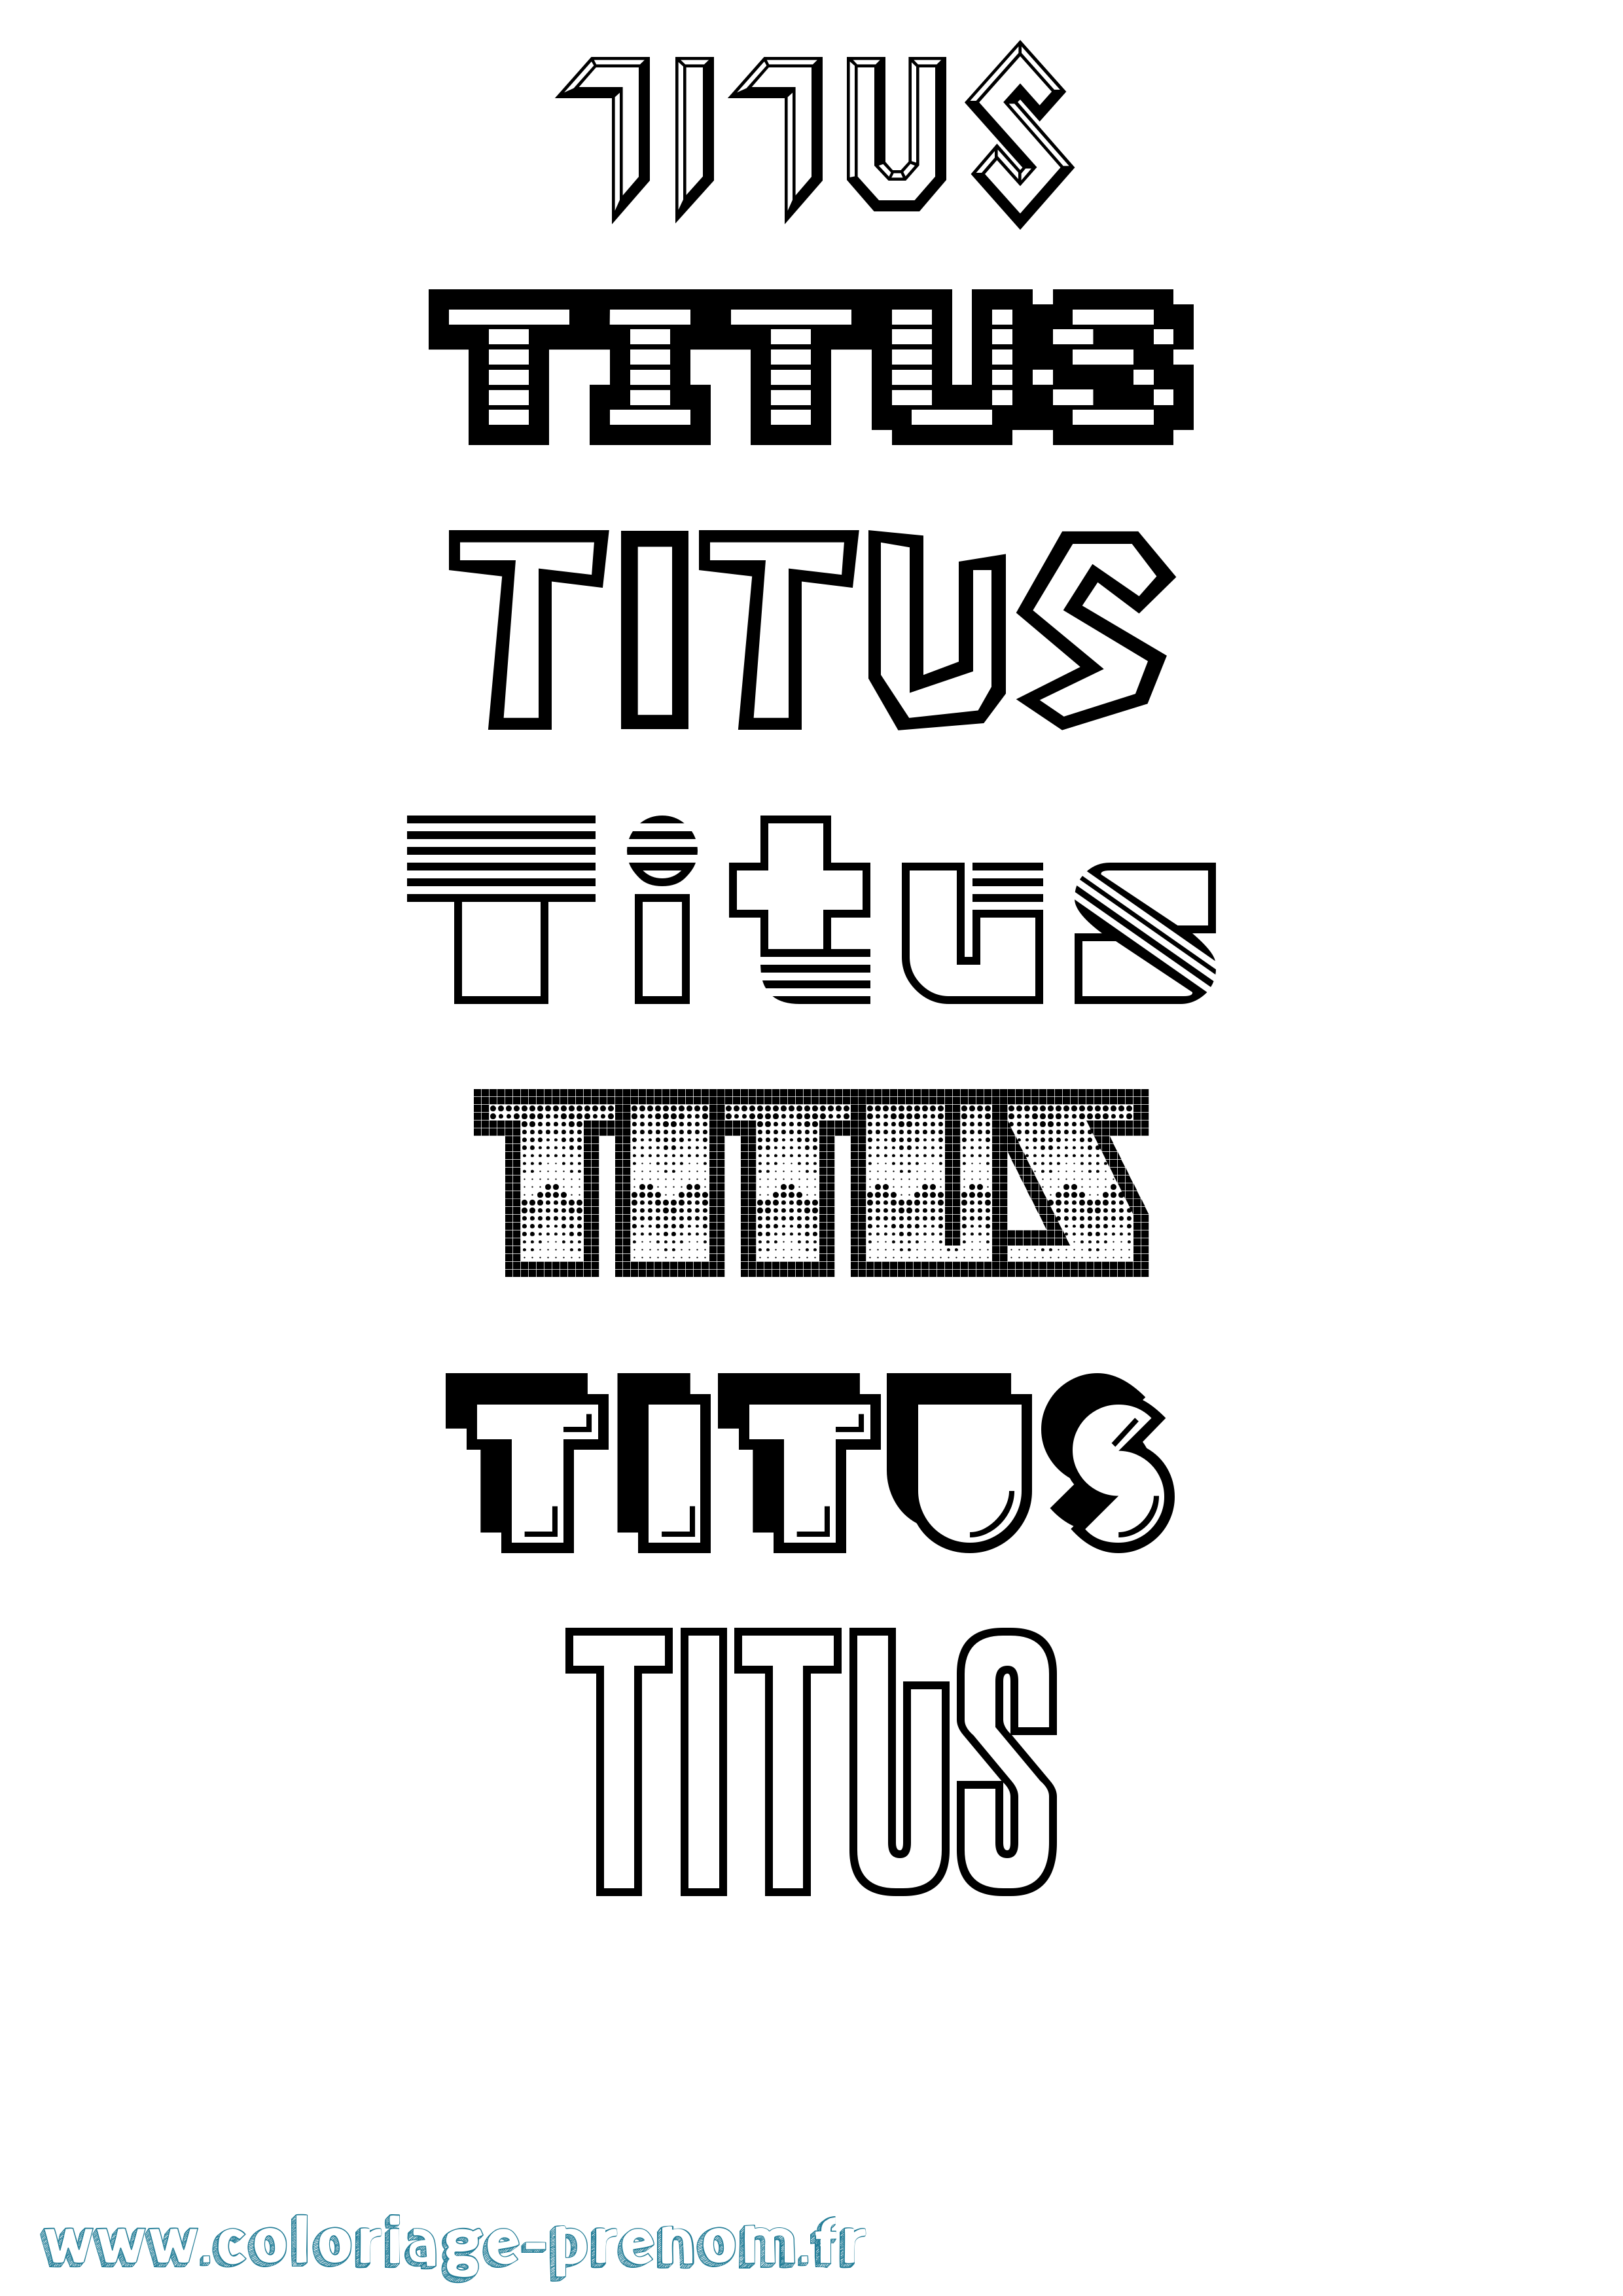 Coloriage prénom Titus Jeux Vidéos